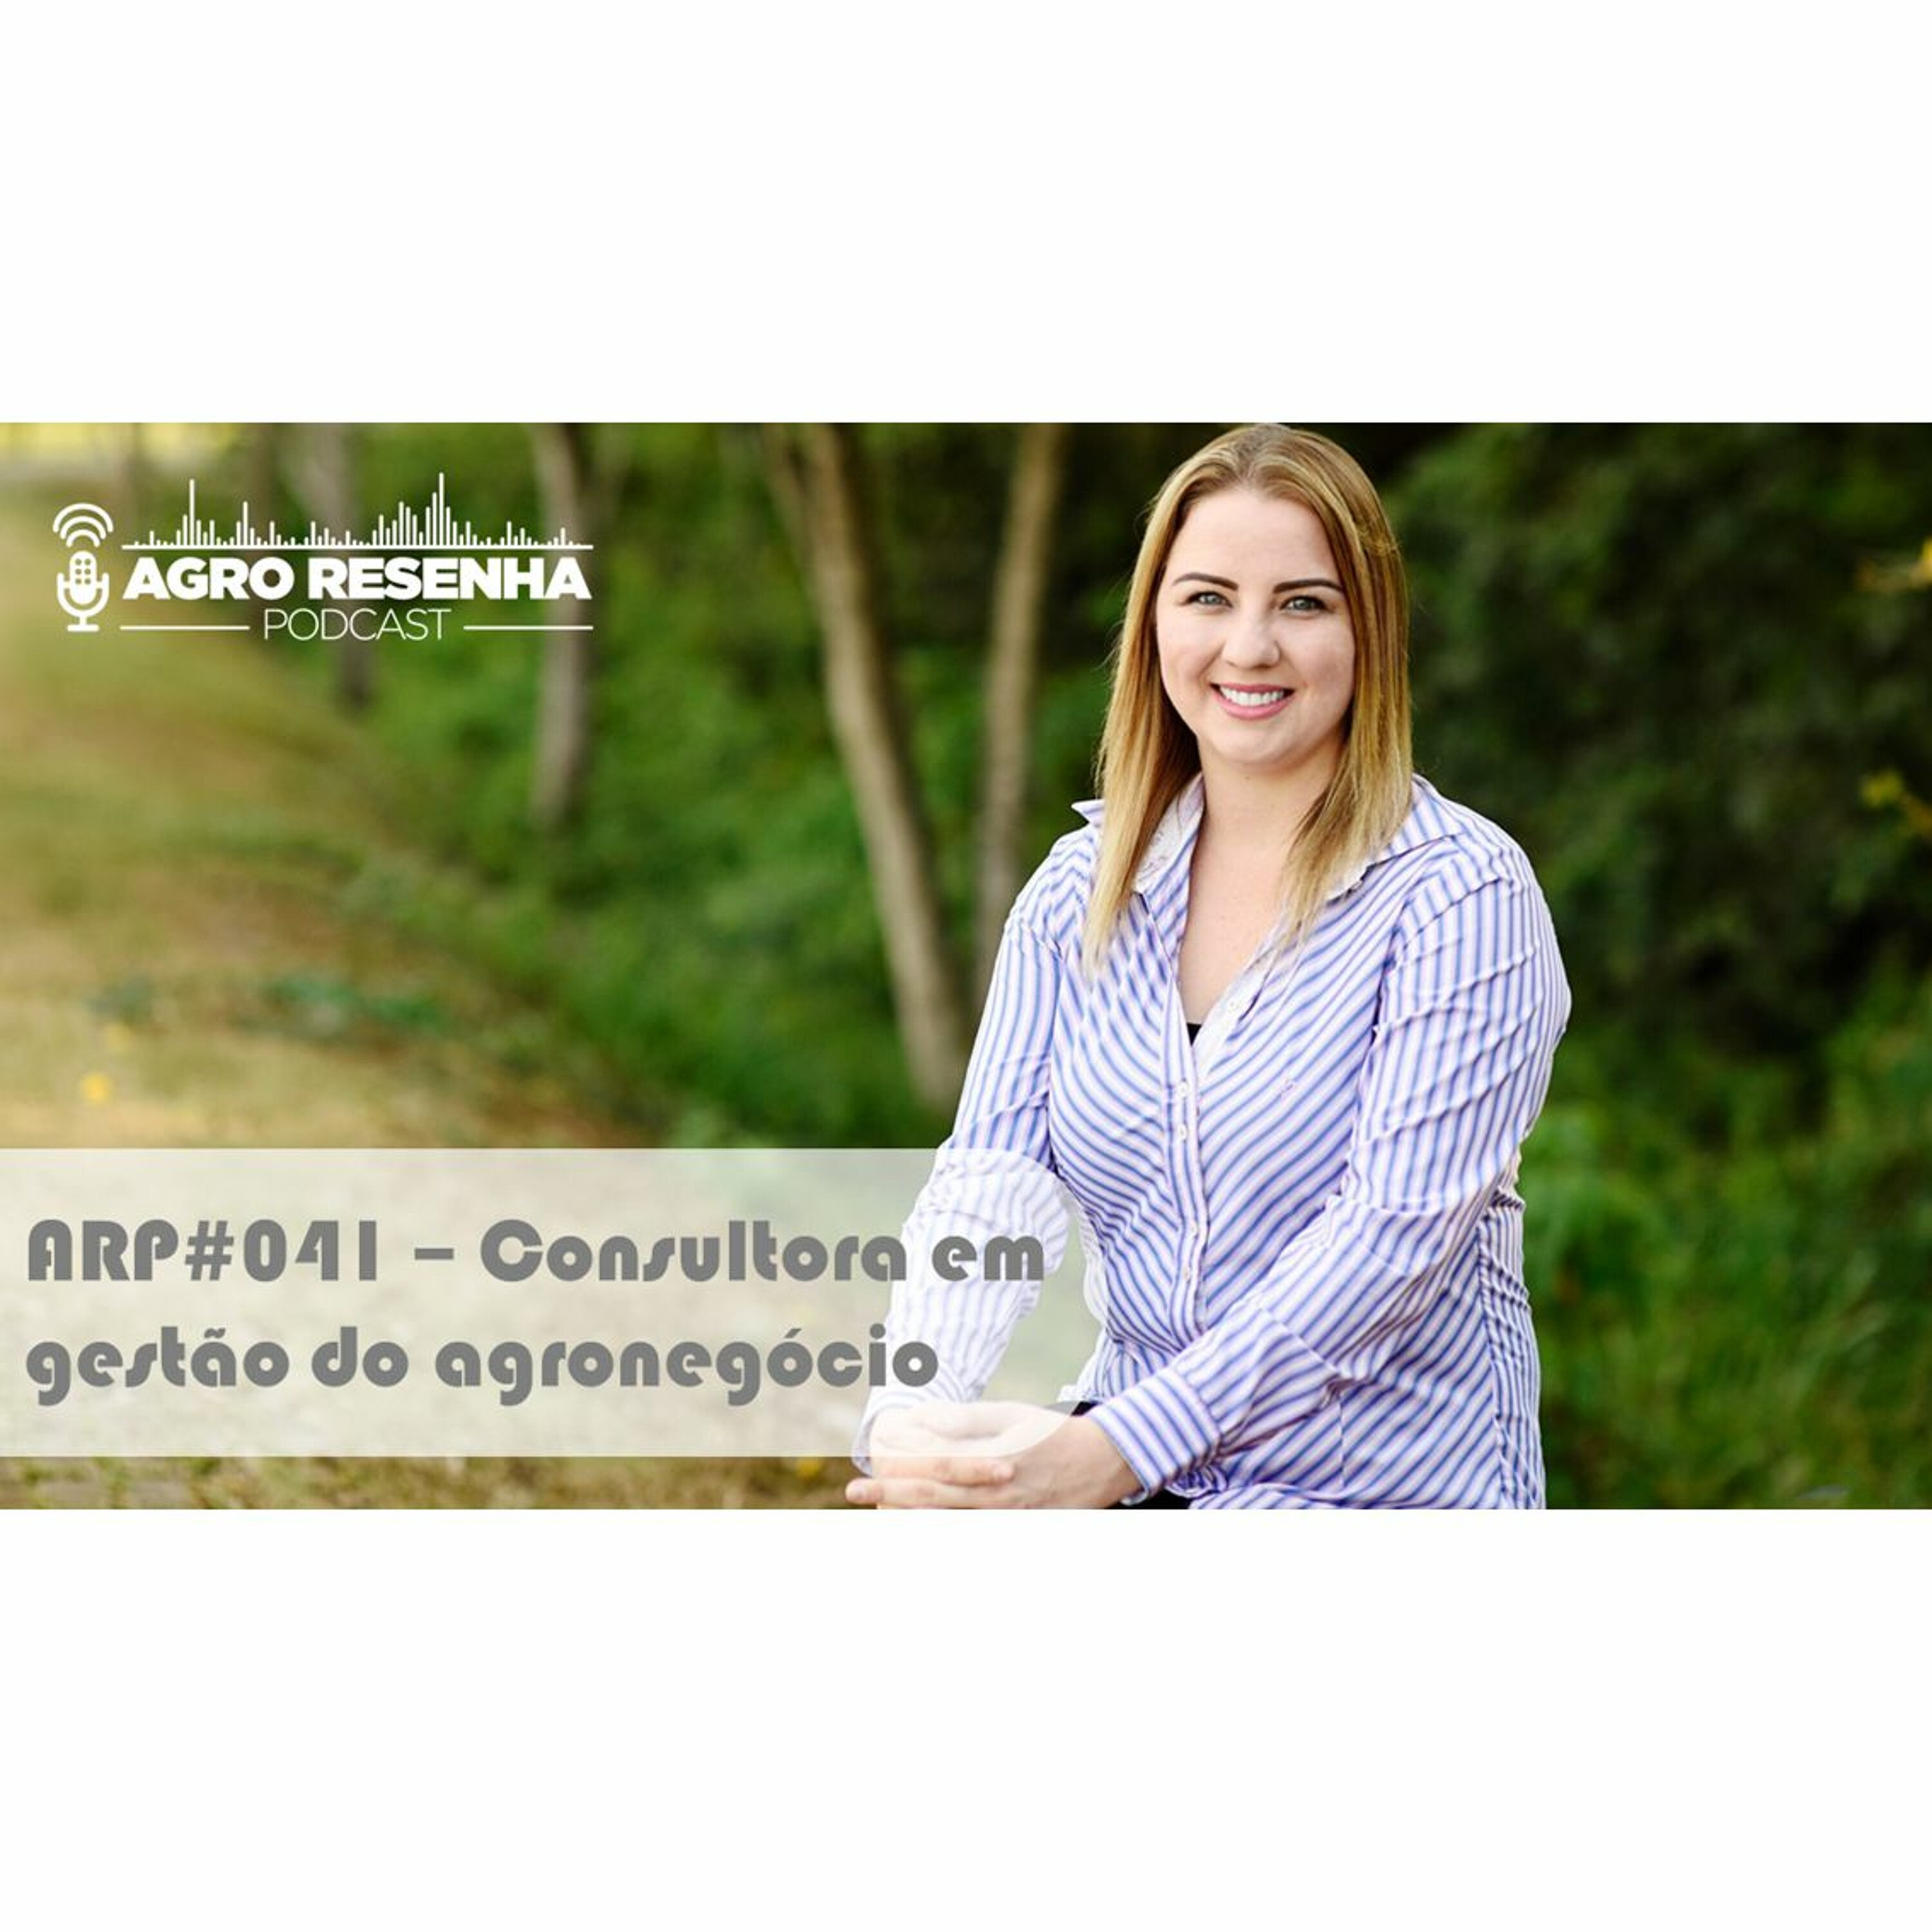 ARP#041 - Consultora em gestão do agronegócio